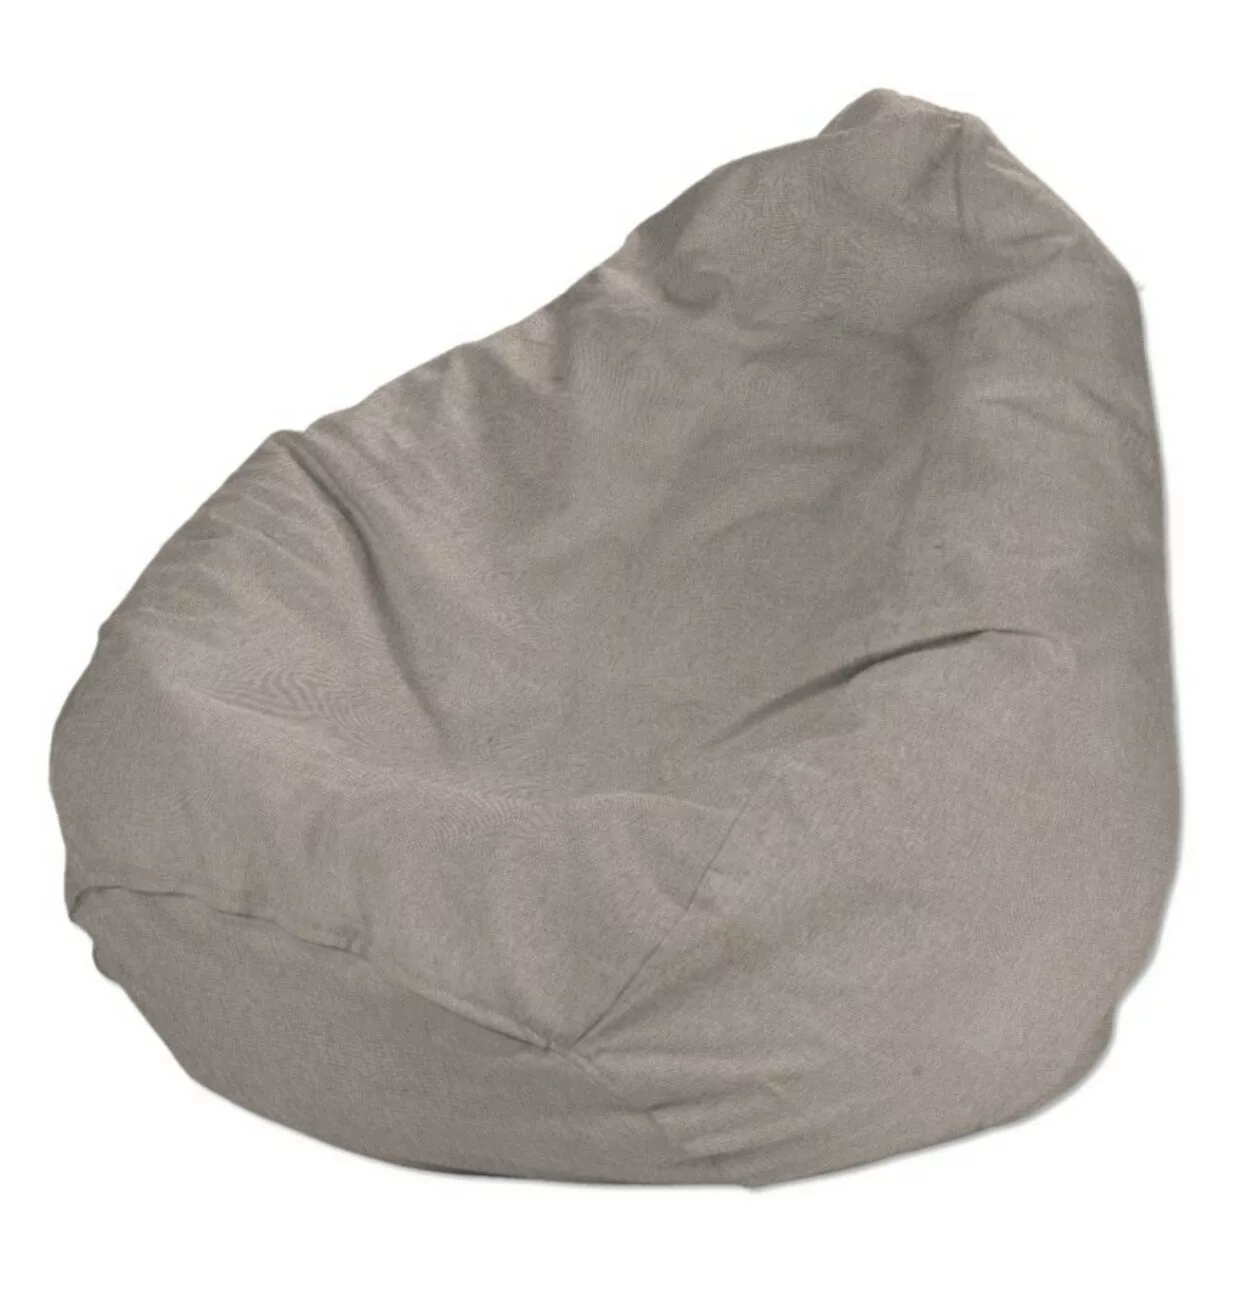 Bezug für Sitzsack, beige-grau, Bezug für Sitzsack Ø50 x 85 cm, Etna (705-0 günstig online kaufen